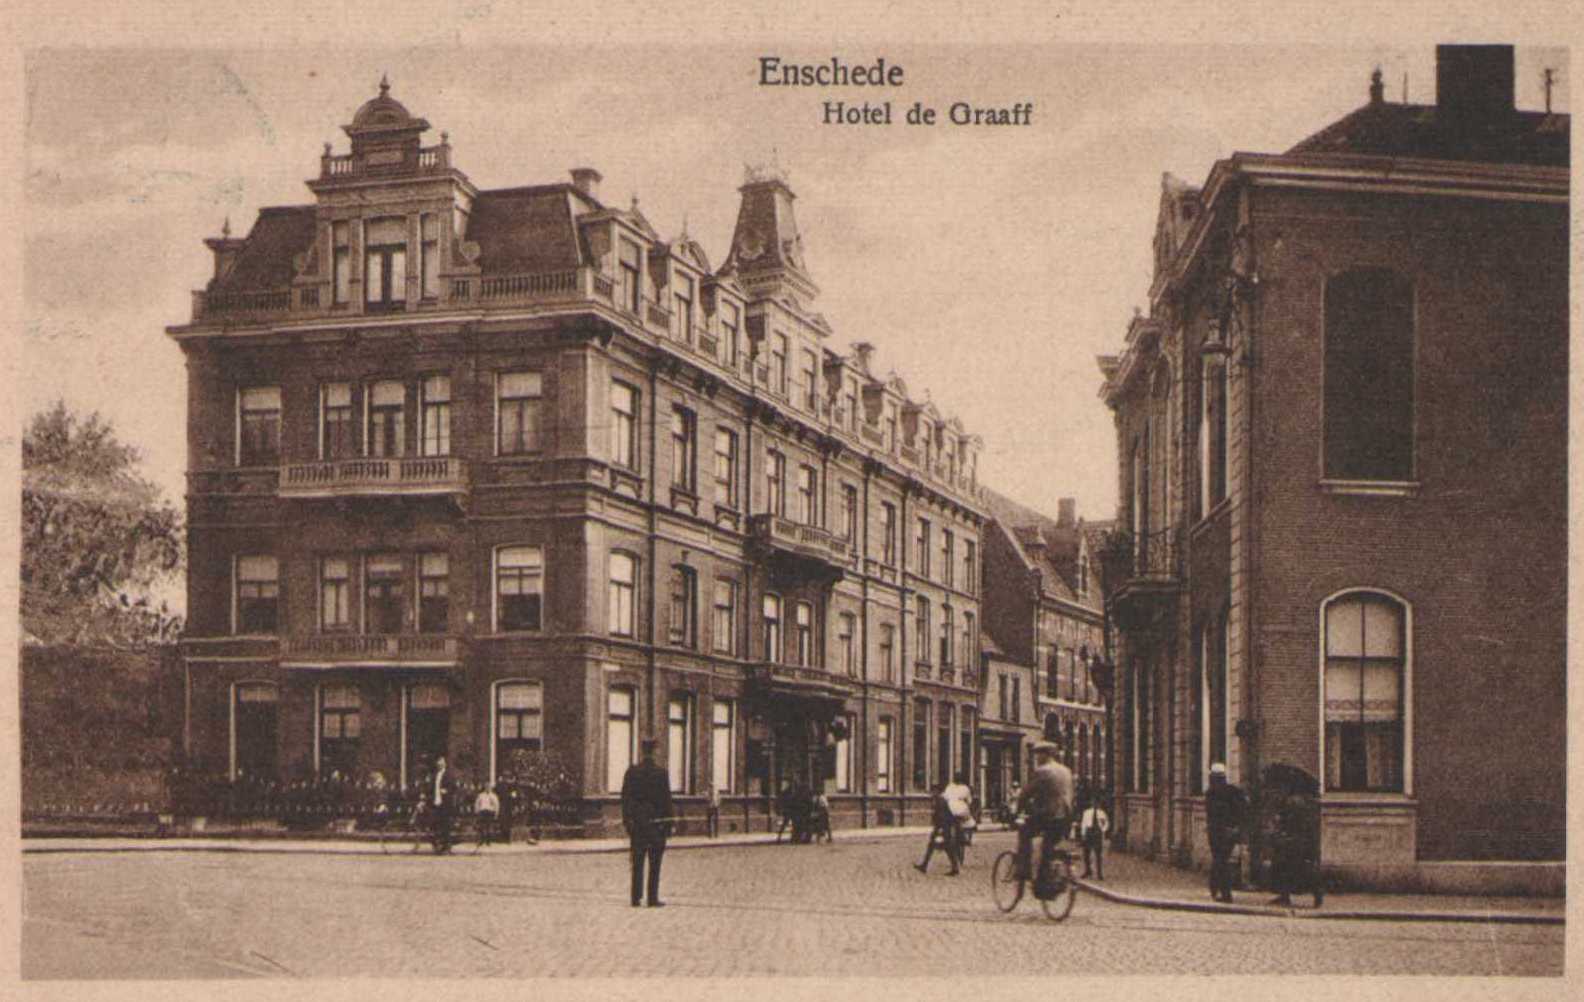 Hotel-de-graaff-1930.jpg